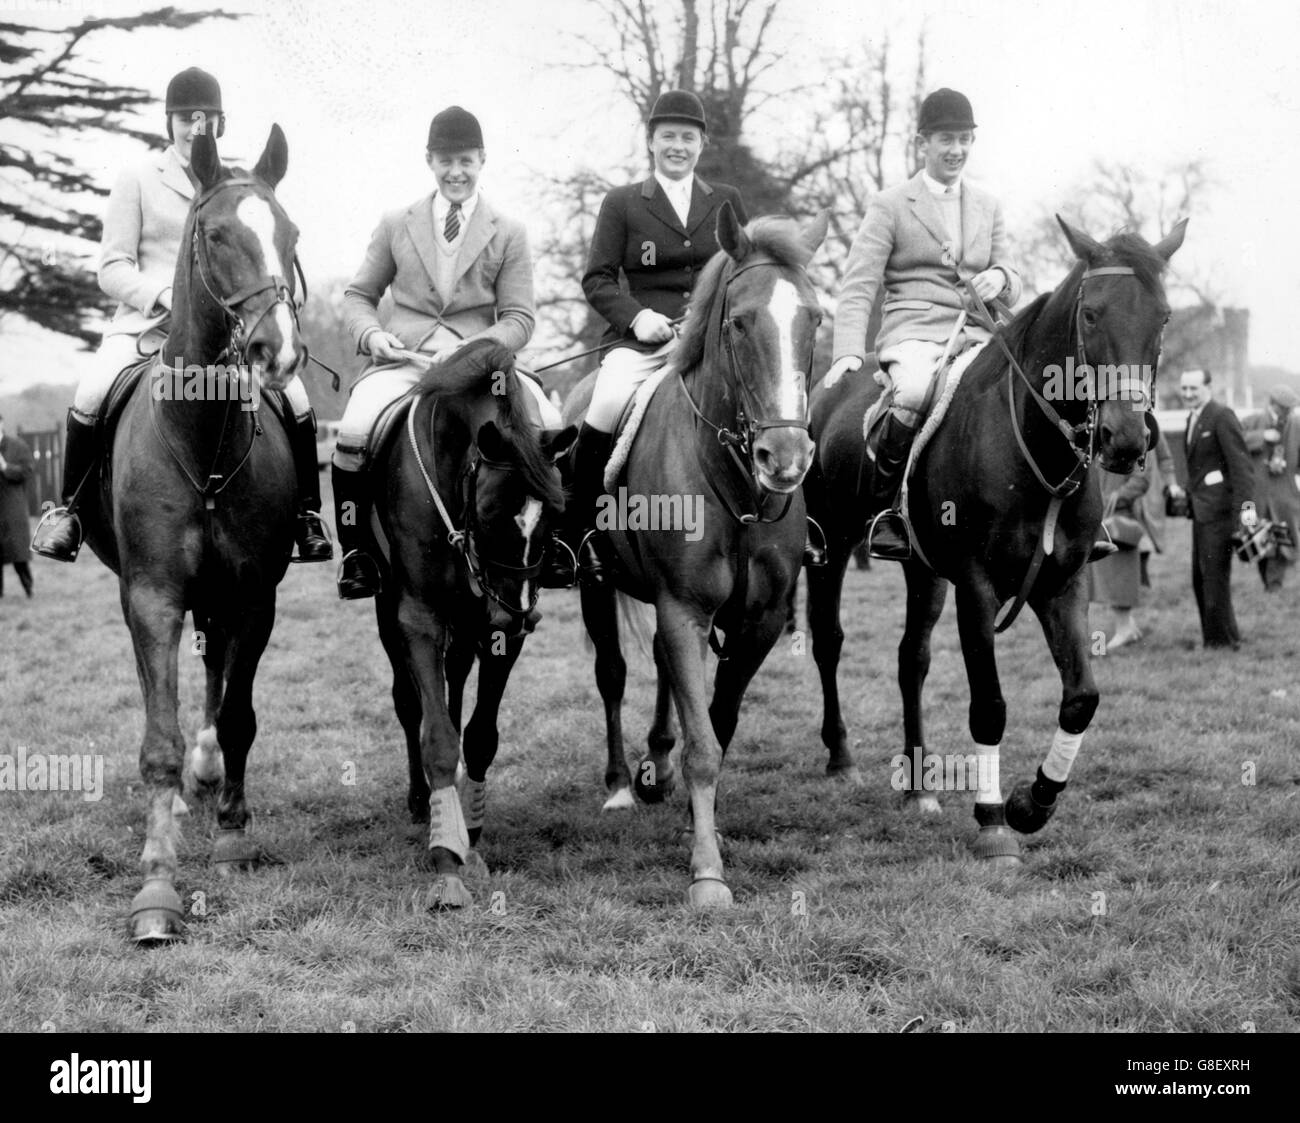 Im Schloss Arundel, Sussex, sind vier der sieben Reiter zu sehen, die Einladungen der British Show Jumping Association angenommen haben, um sich für die Pferdesport-Veranstaltungen bei den Olympischen Spielen, die später im Jahr in Rom stattfinden, zu trainieren. (l-r) Miss Ann Townsend, 19, aus South Farm, Southrop, Lechlade, Gloucestershire, über 'Bandit IV', David Barker, 24, aus Bilbrough Grange, Yorkshire, über 'Franco', Miss Pat Smythe, 31, aus Stroud, Gloucester, über 'Flanagan' und David Broome, 19, aus Chepstow, Monmouthshire III, über 'Wildfire'. Stockfoto